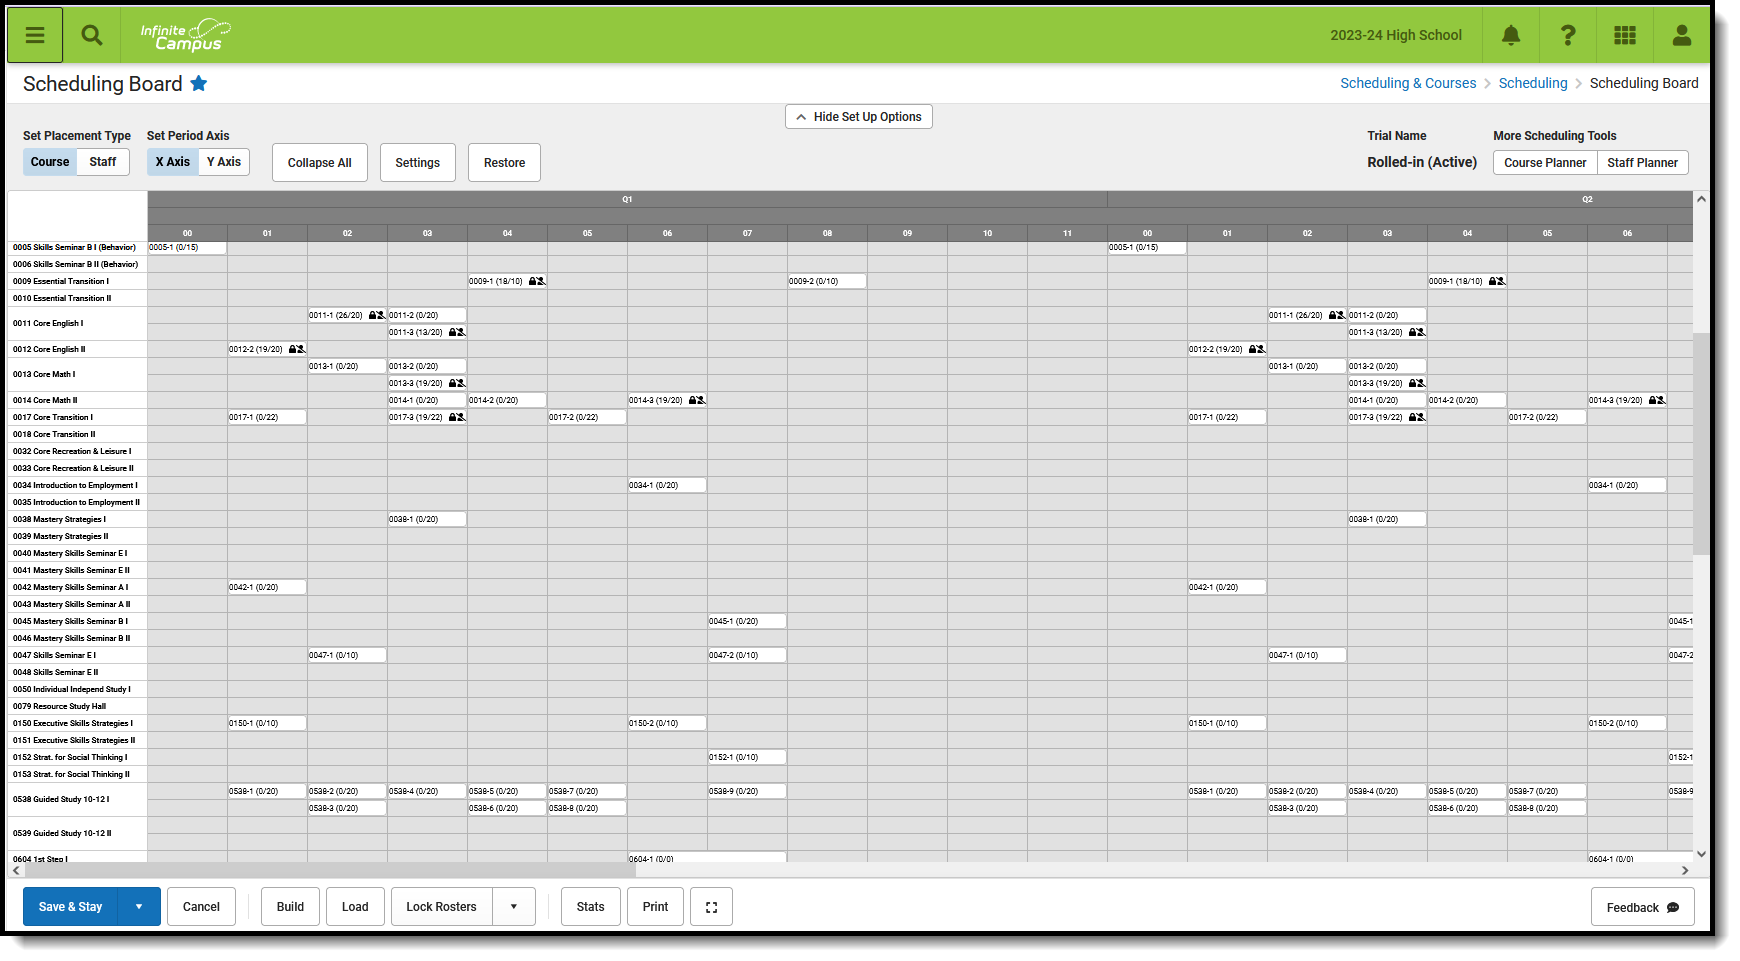 Screenshot of Scheduling Board in Scheduling and Courses, Scheduling, Scheduling Board